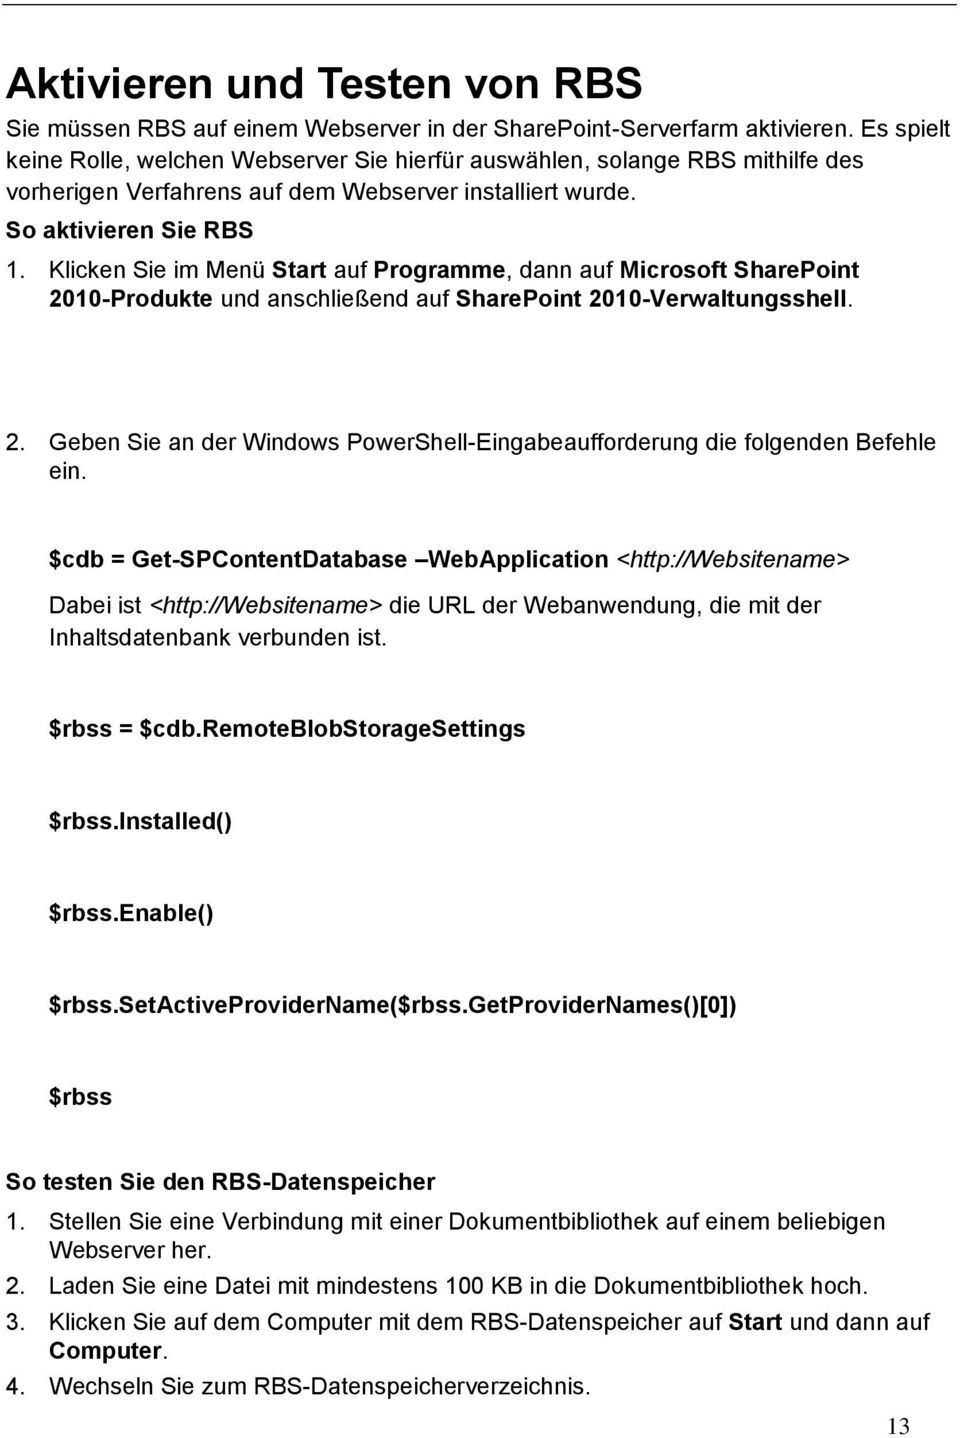 Klicken Sie im Menü Start auf Programme, dann auf Microsoft SharePoint 2010-Produkte und anschließend auf SharePoint 2010-Verwaltungsshell. 2. Geben Sie an der Windows PowerShell-Eingabeaufforderung die folgenden Befehle ein.